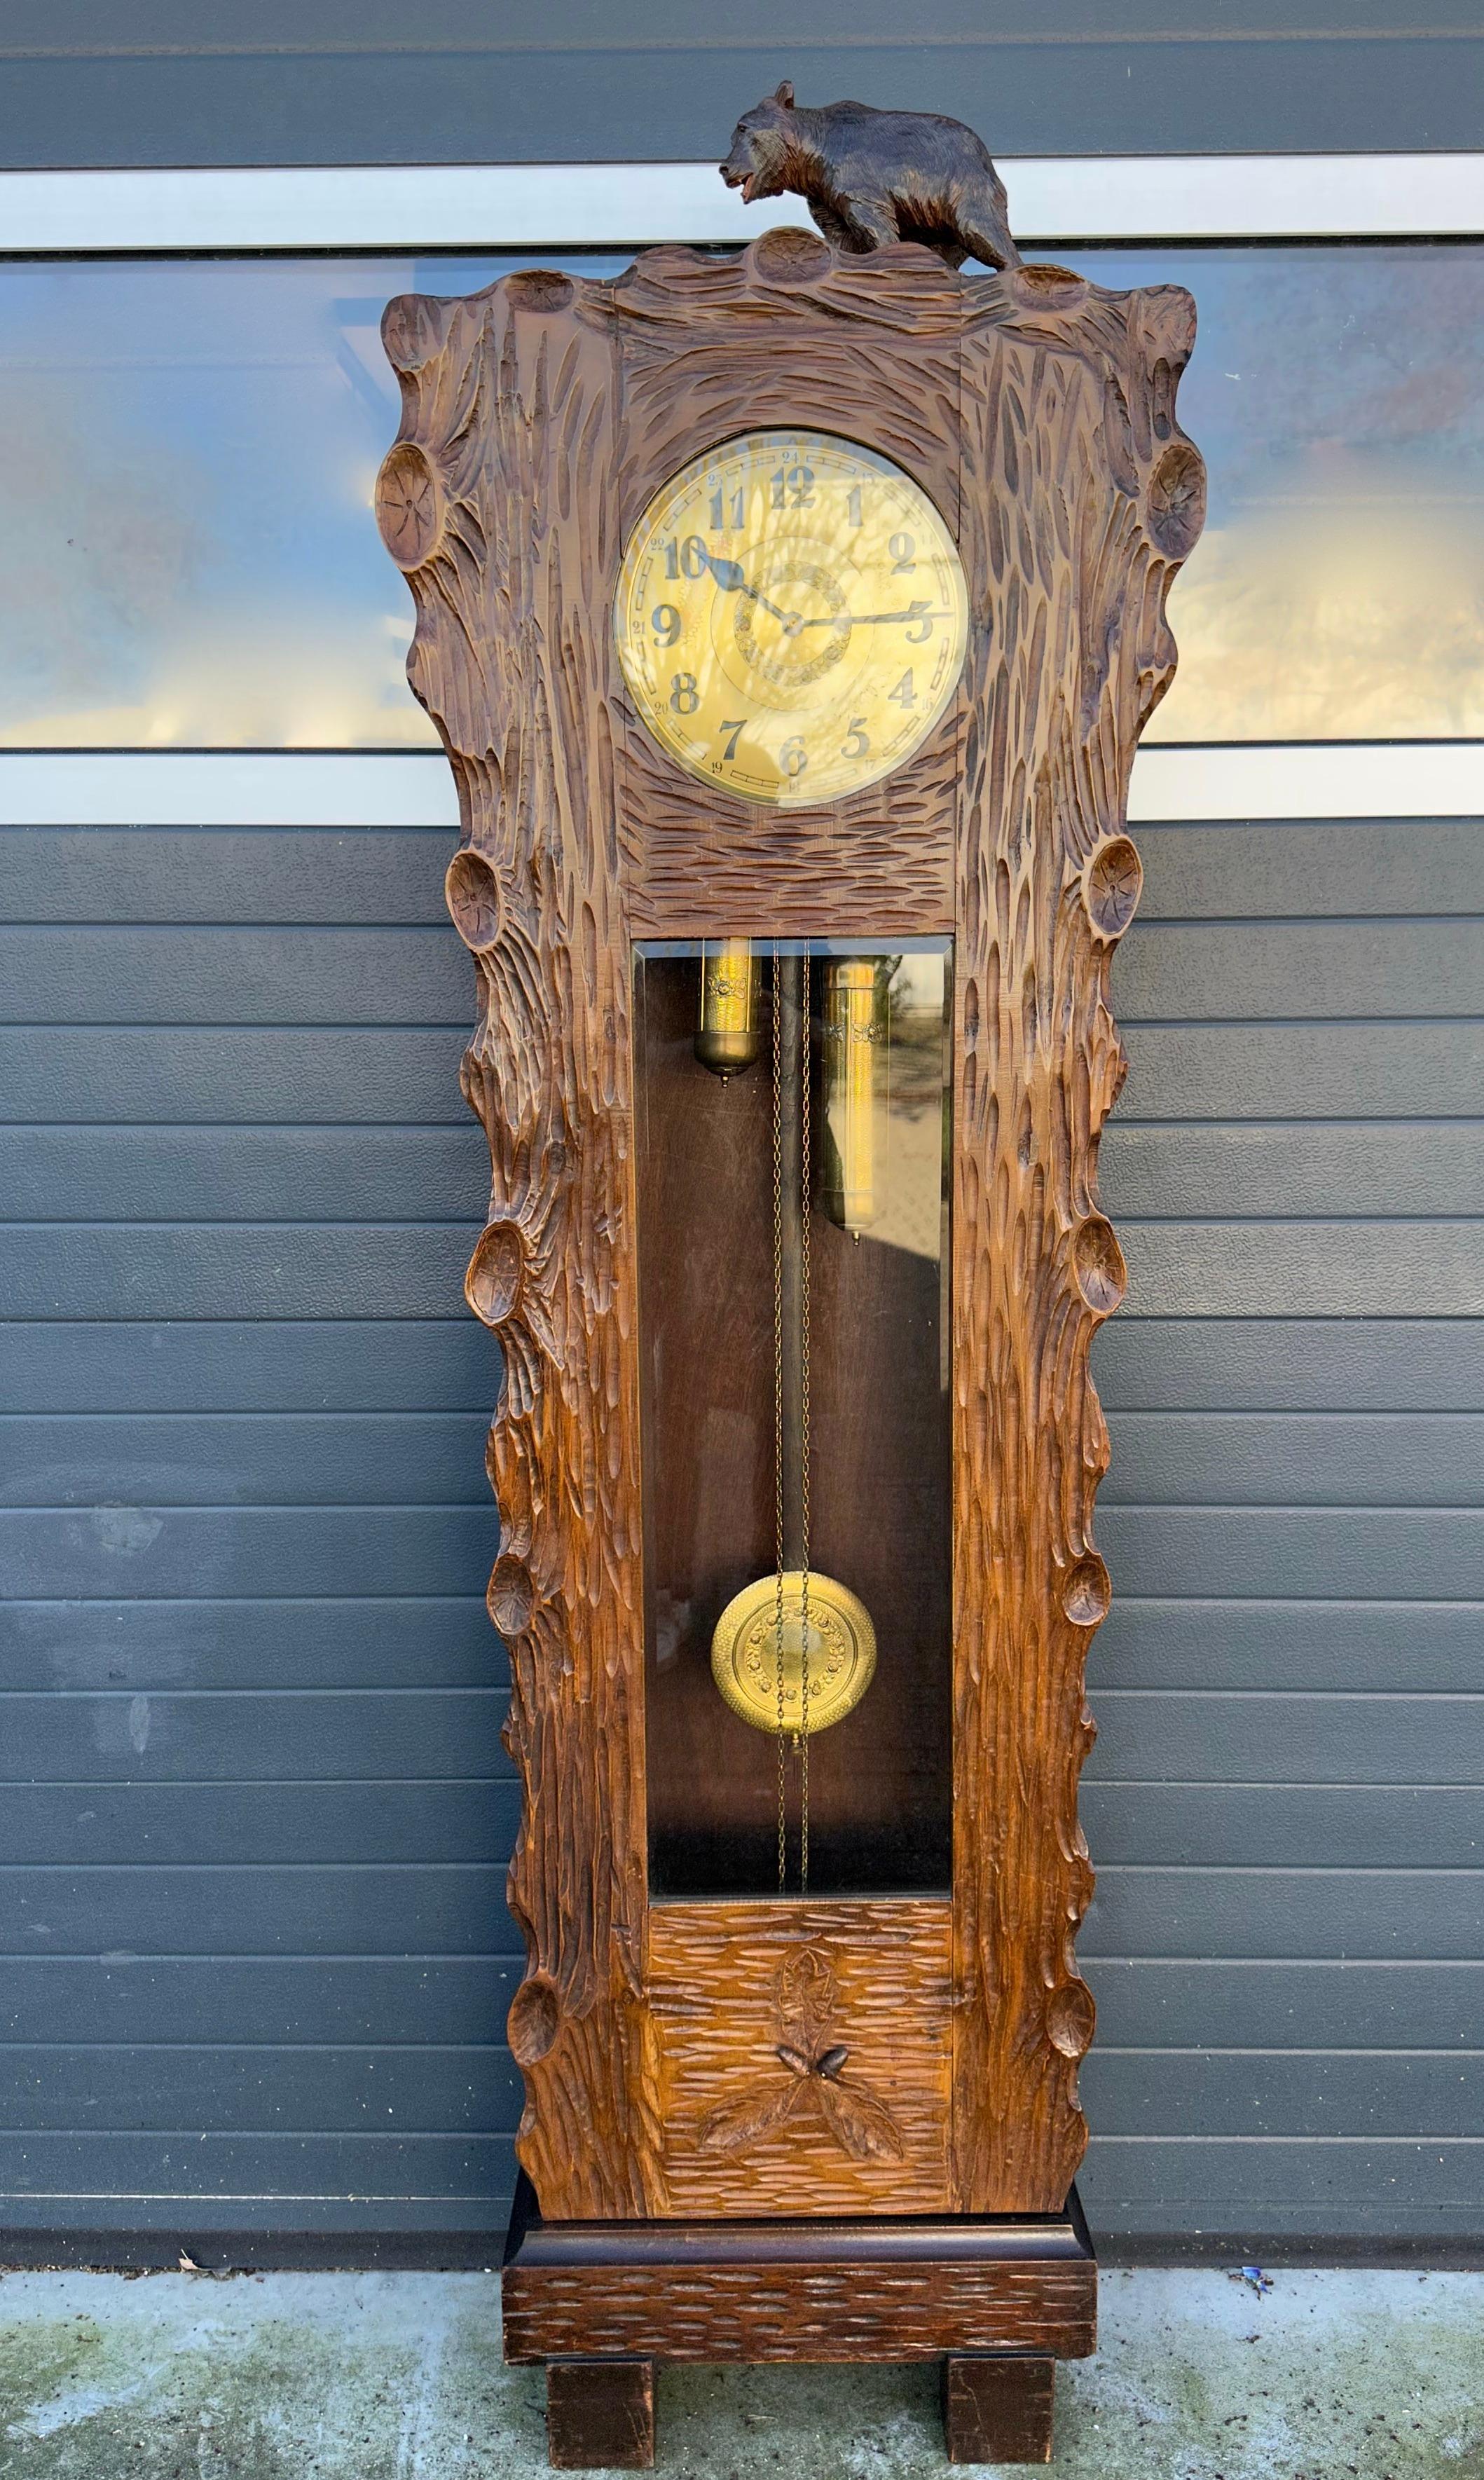 Horloge étonnante pour les collectionneurs d'antiquités de la Forêt-Noire très rares et très élégantes.

Les horloges de grand-père ou à long buffet en forme de tronc d'arbre sont rares et ce spécimen de 2,5 mètres de haut pourrait difficilement